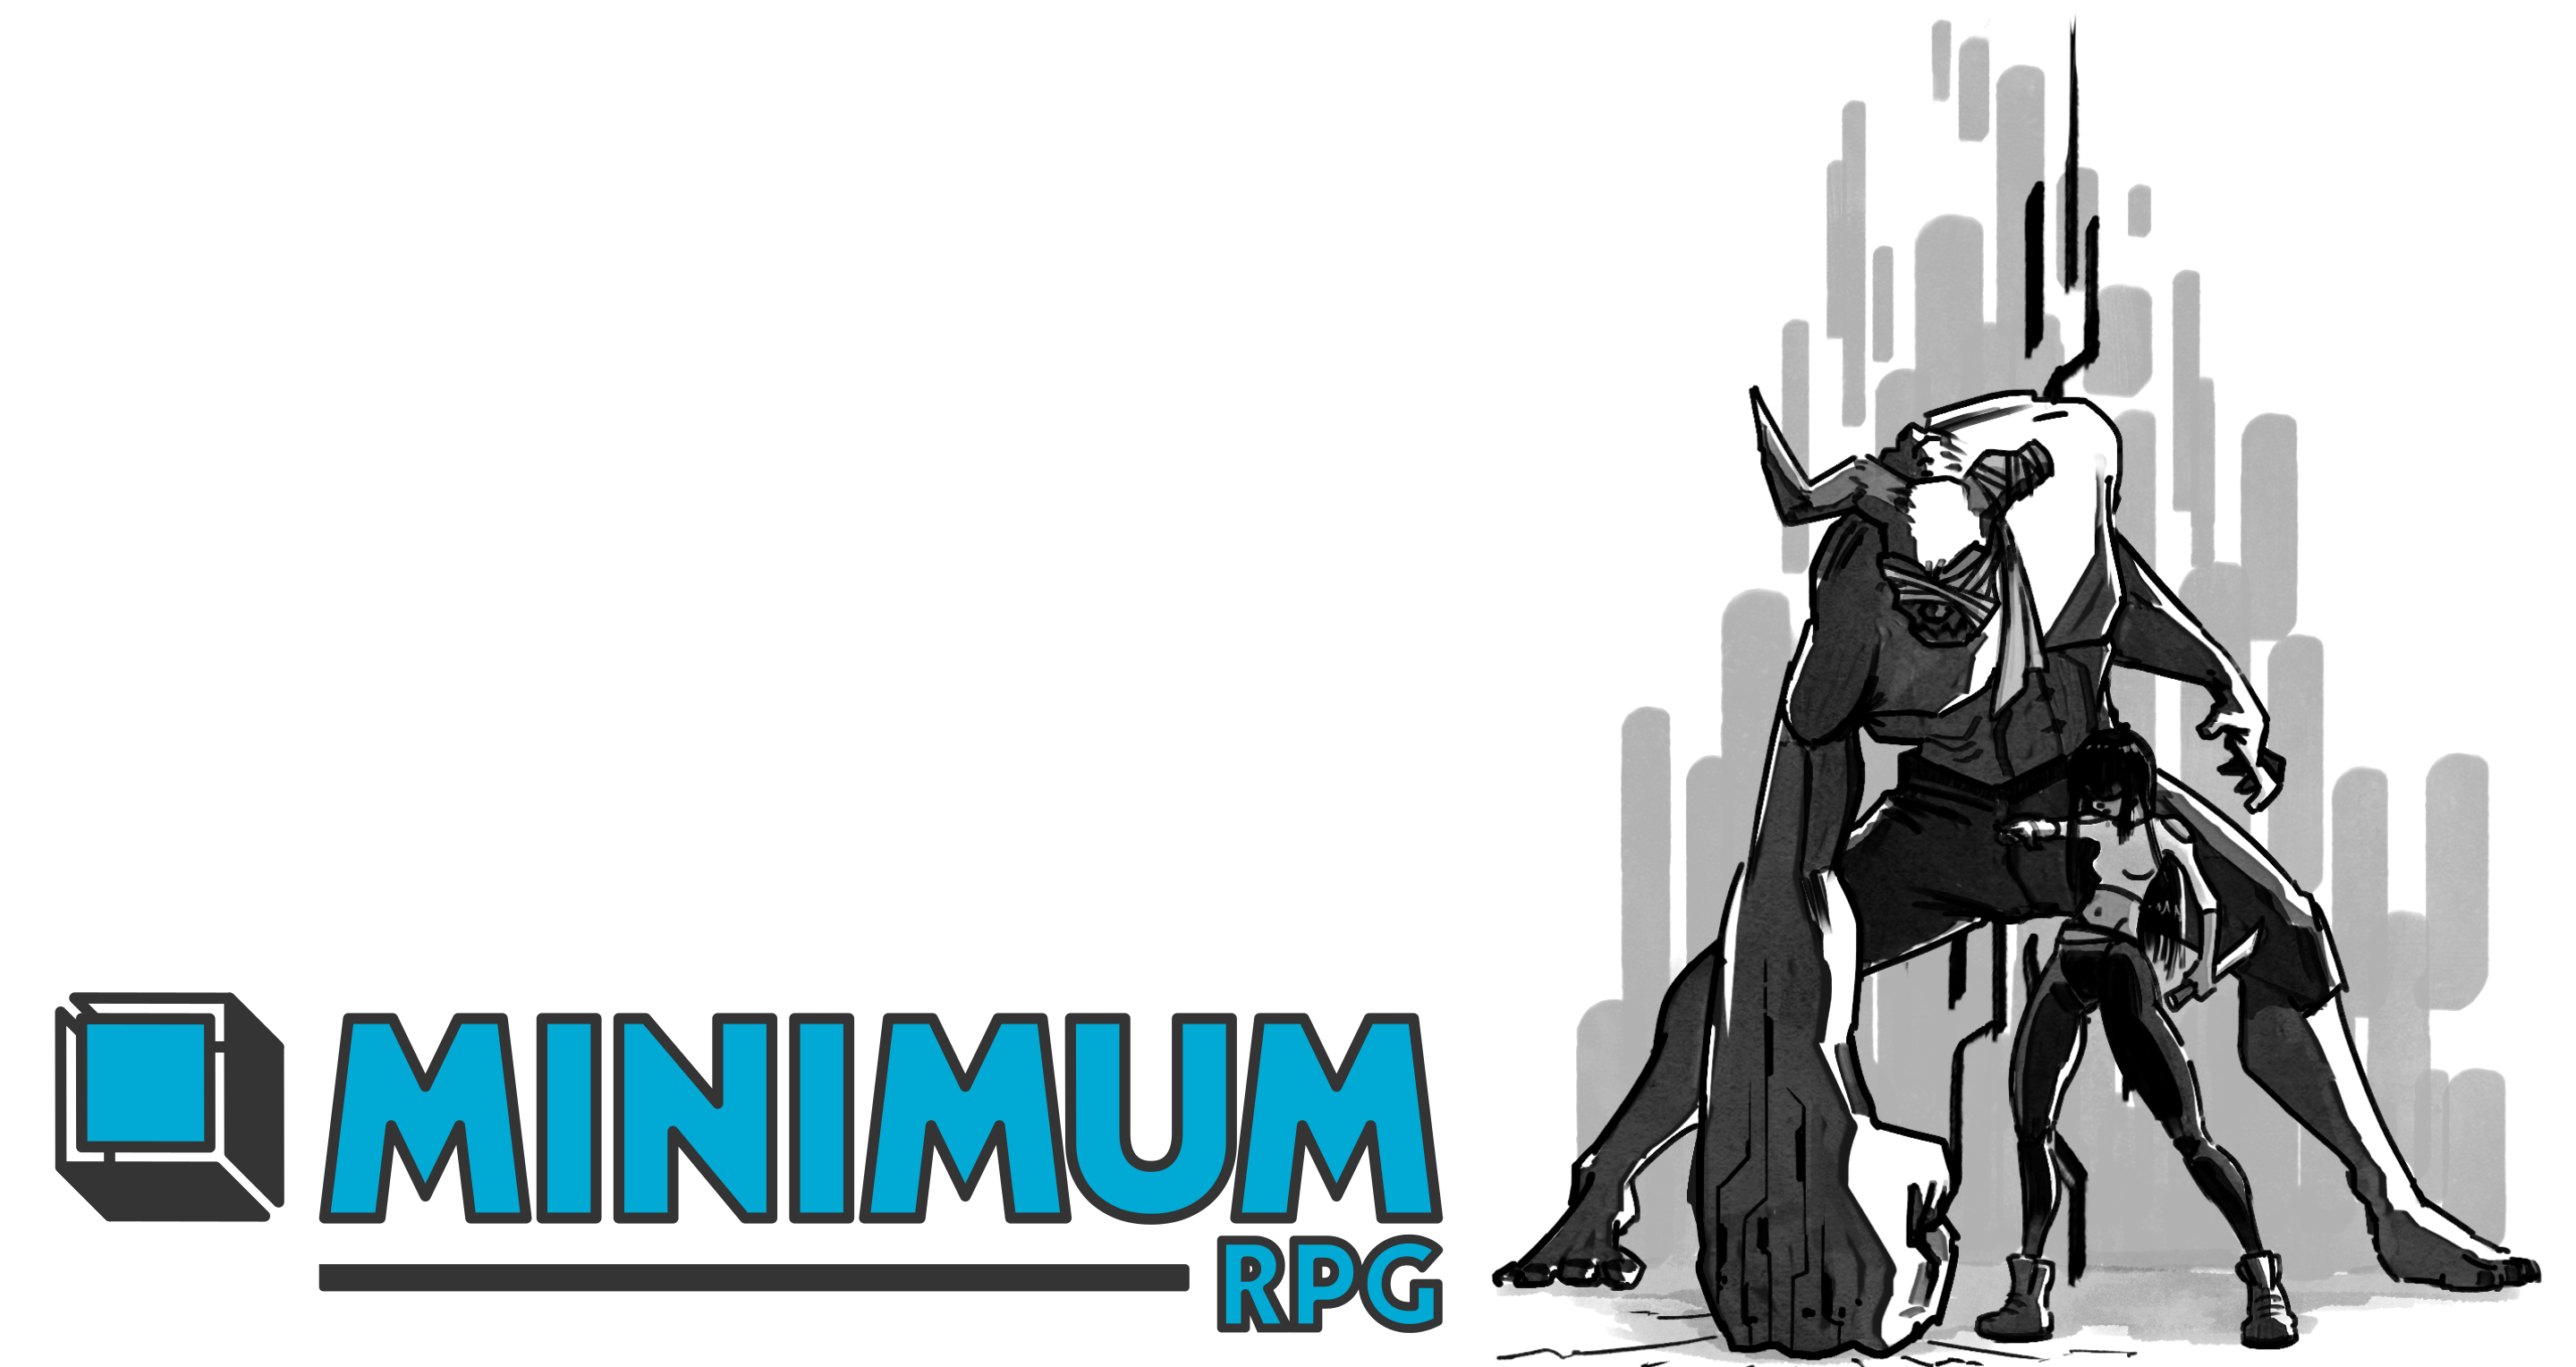 Minimum RPG